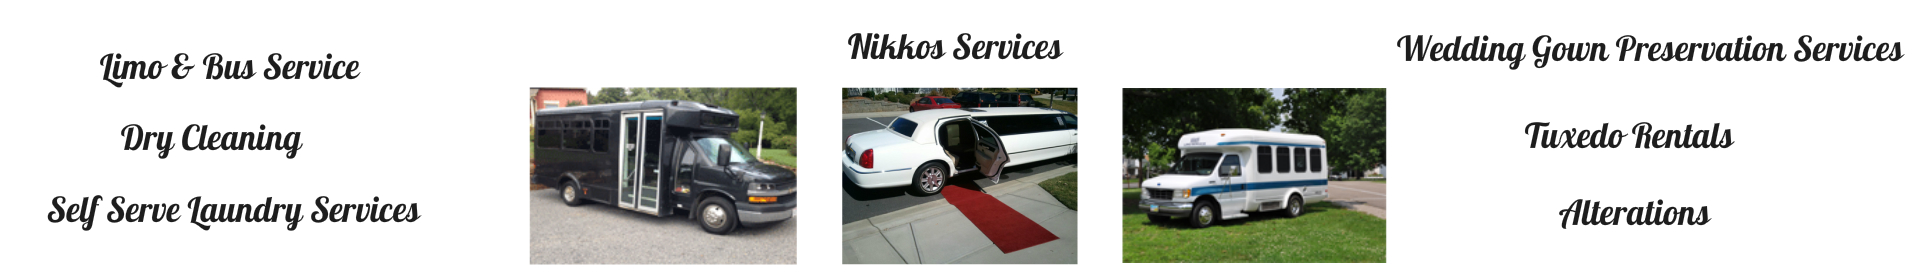 Nikkos Services 1920x274